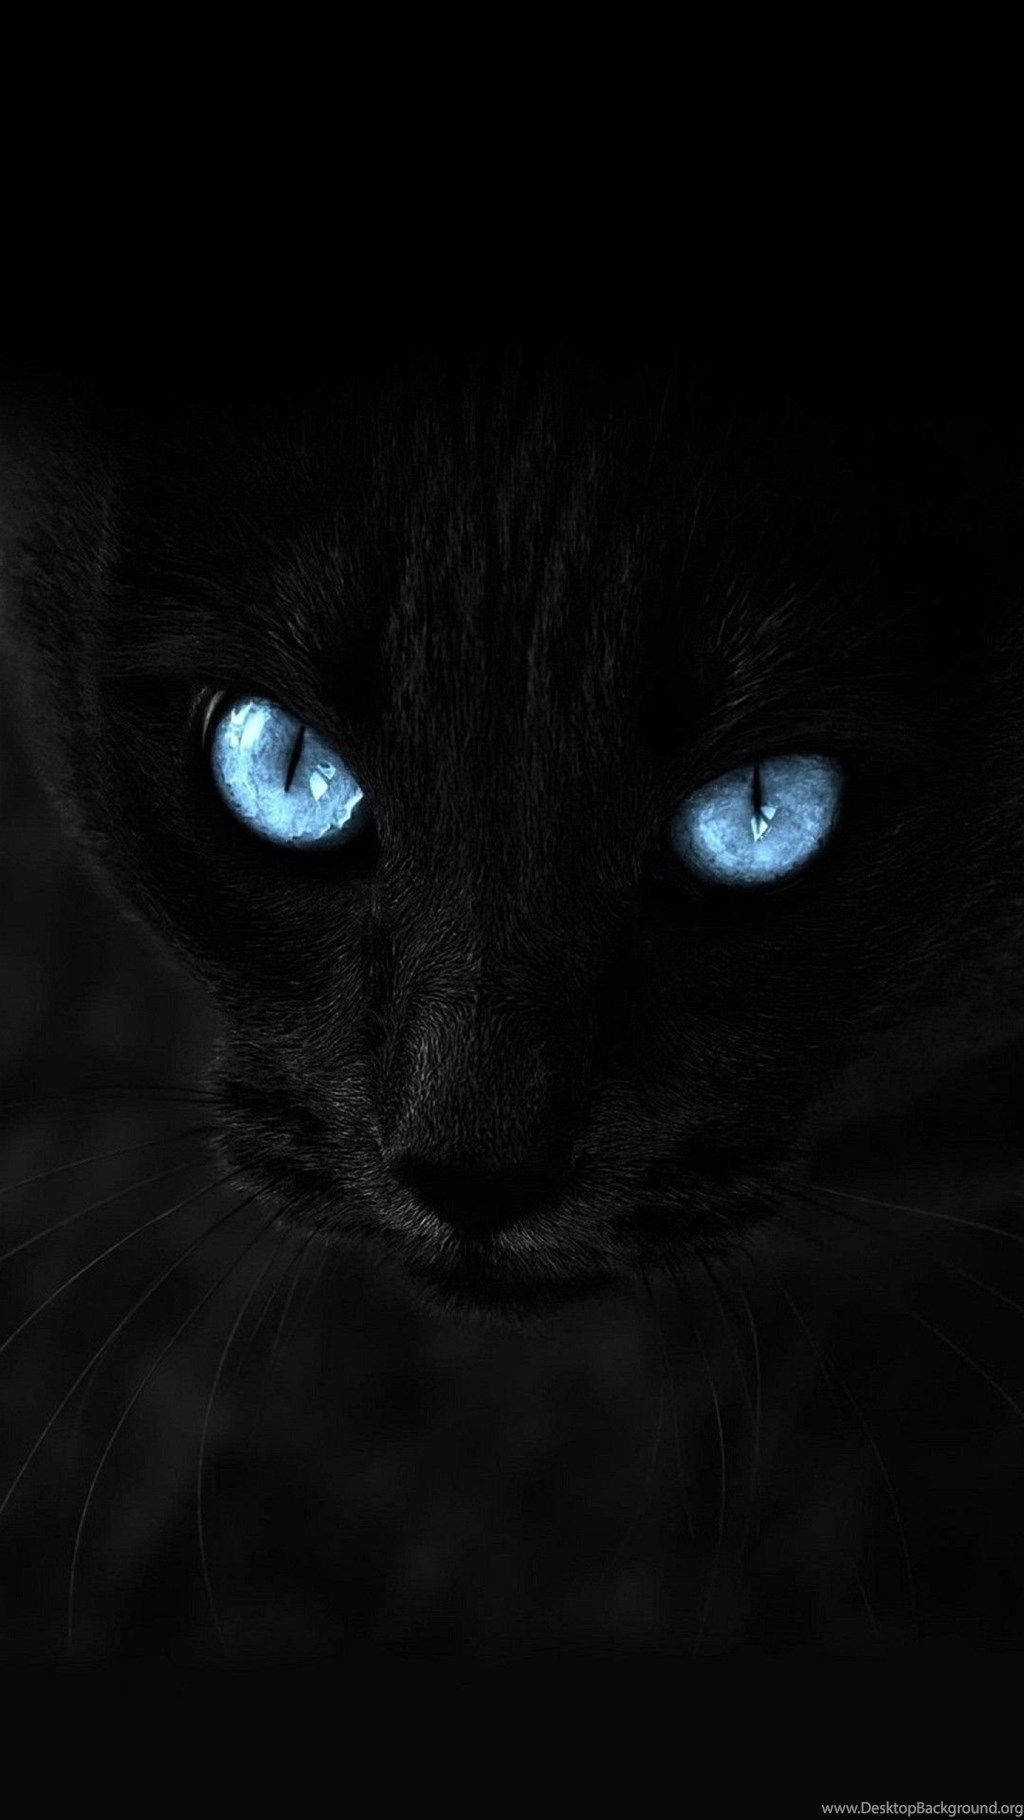 black-cat